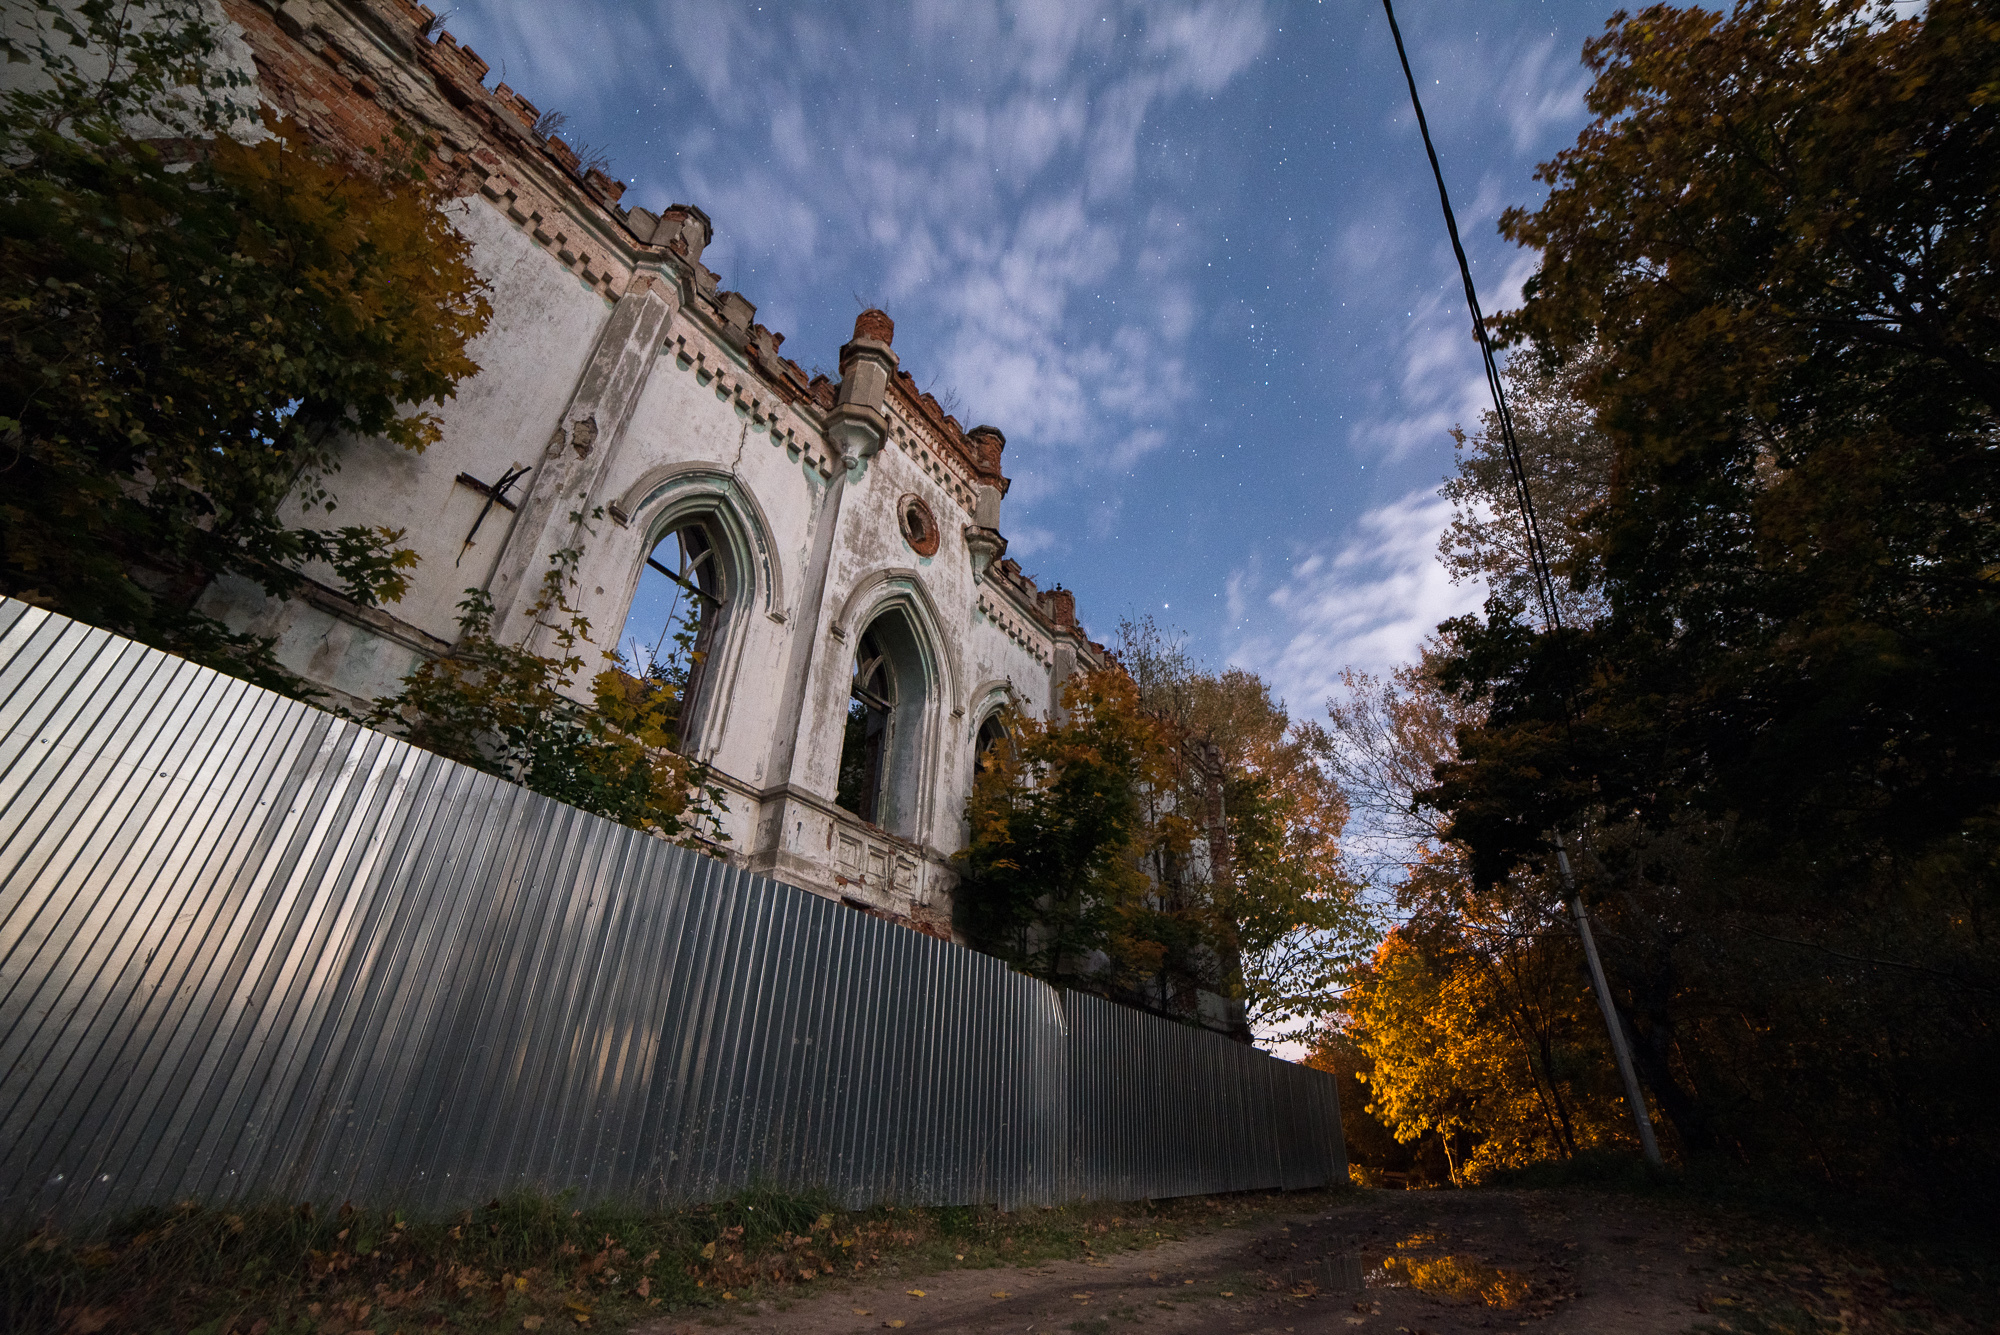 Kolosovsky Castle at night - My, Barin, Manor, Lock, Aleksin, Night shooting, Moonlight, Video, Longpost